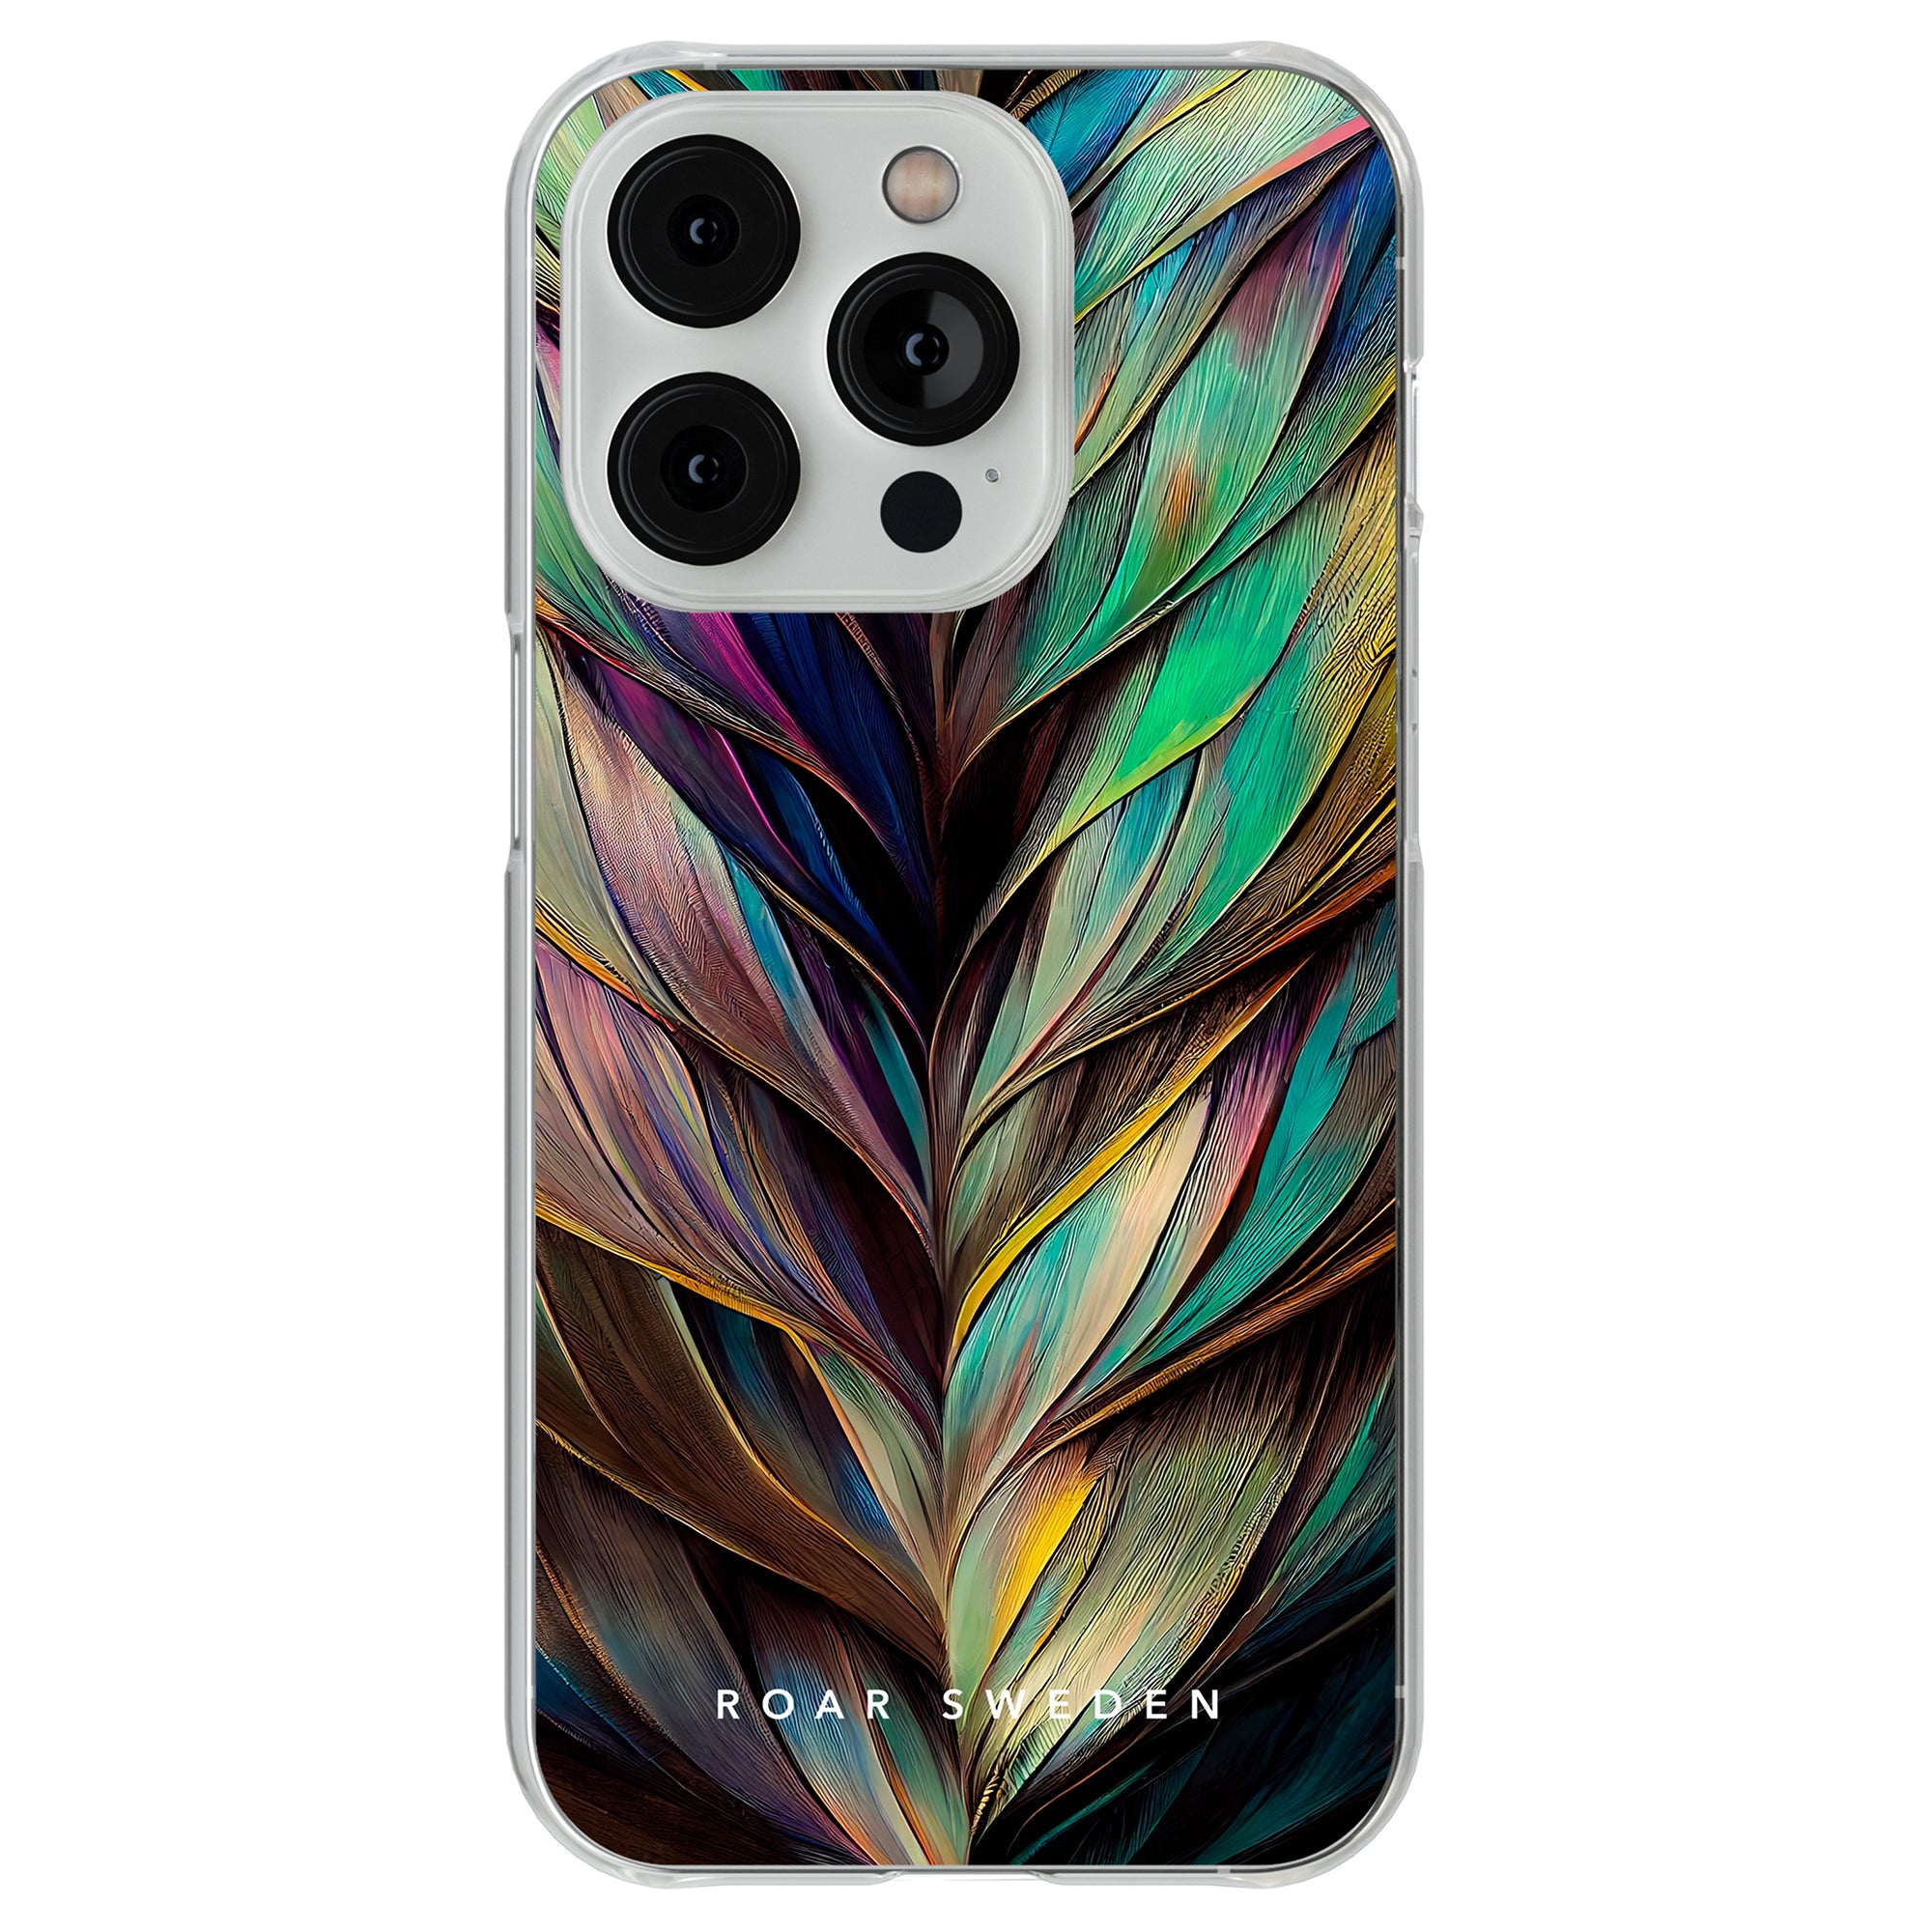 Beskrivning: Ett mobilskal till iPhone 11 Pro med Feathers - Clear Case, med färgglada fjädrar på.